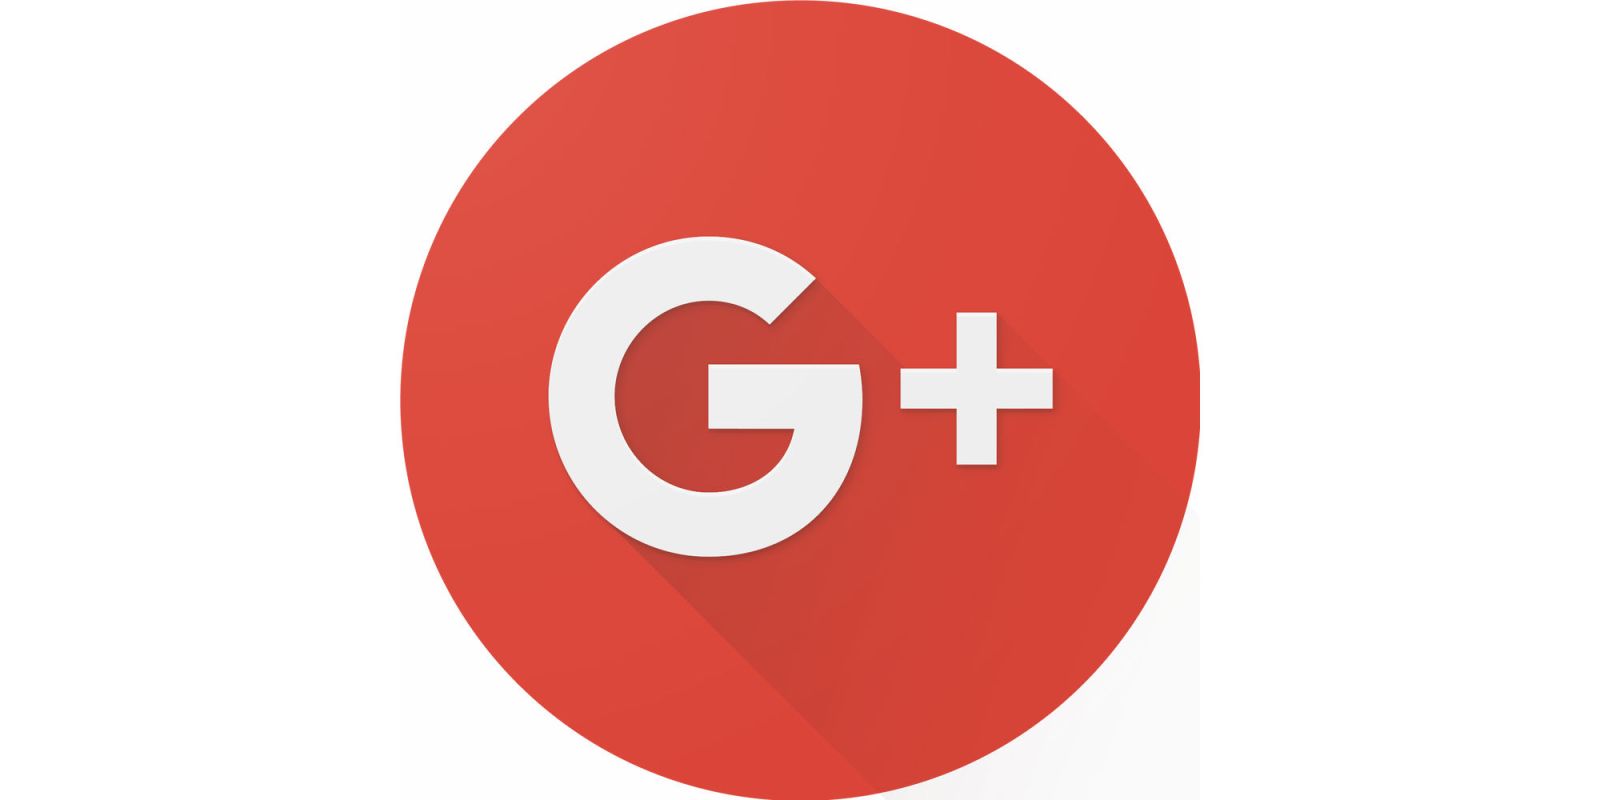 Google+ a breve chiuderà il servizio